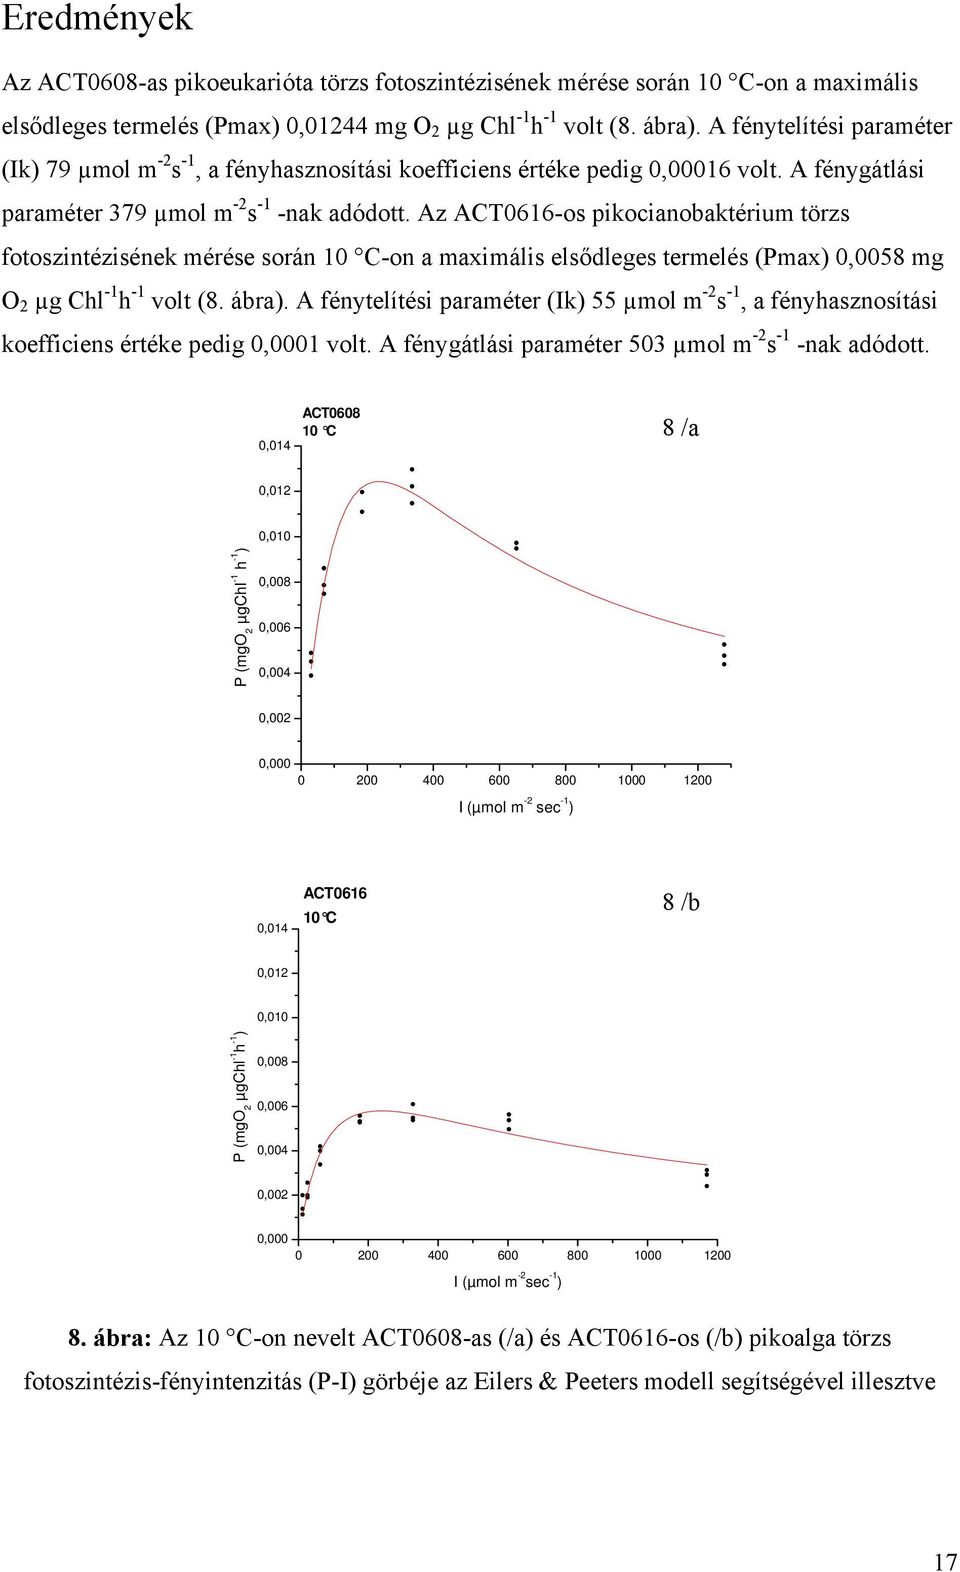 Az ACT0616-os pikocianobaktérium törzs fotoszintézisének mérése során 10 C-on a maximális elsődleges termelés (Pmax) 0,0058 mg O 2 µg Chl -1 h -1 volt (8. ábra).